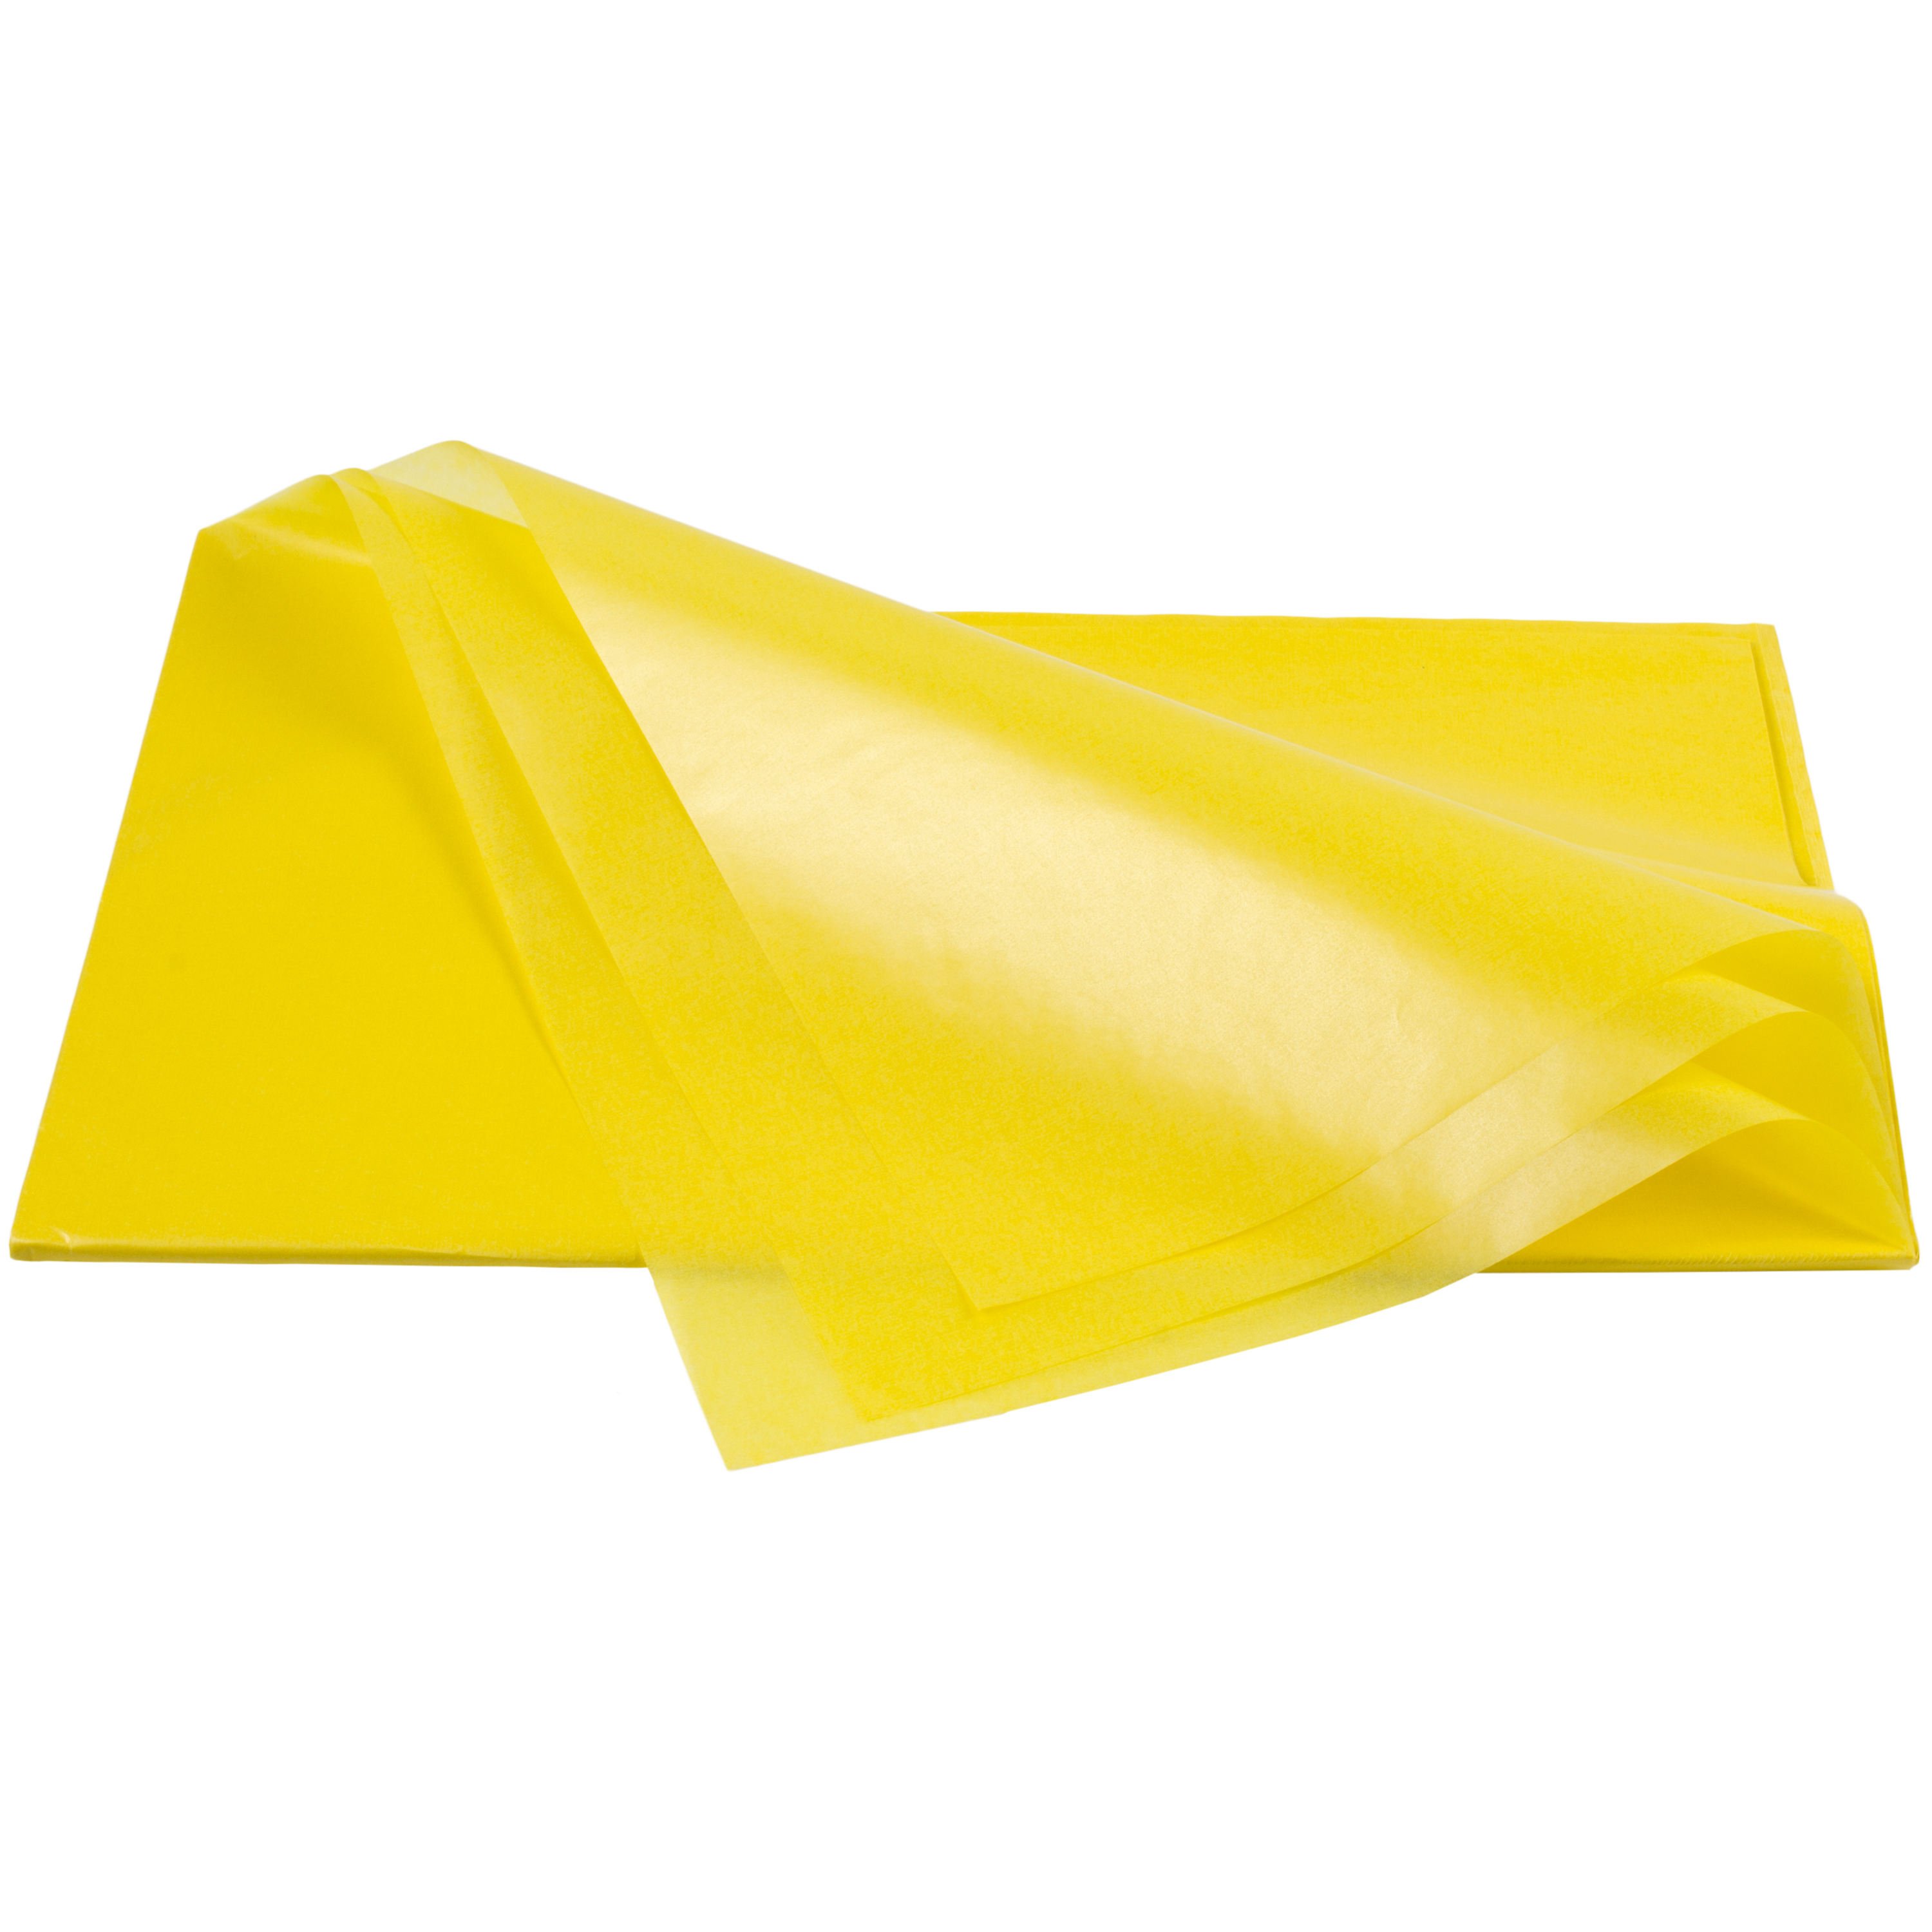 Transparentpapier gelb, 42 g/m², 25 Bögen